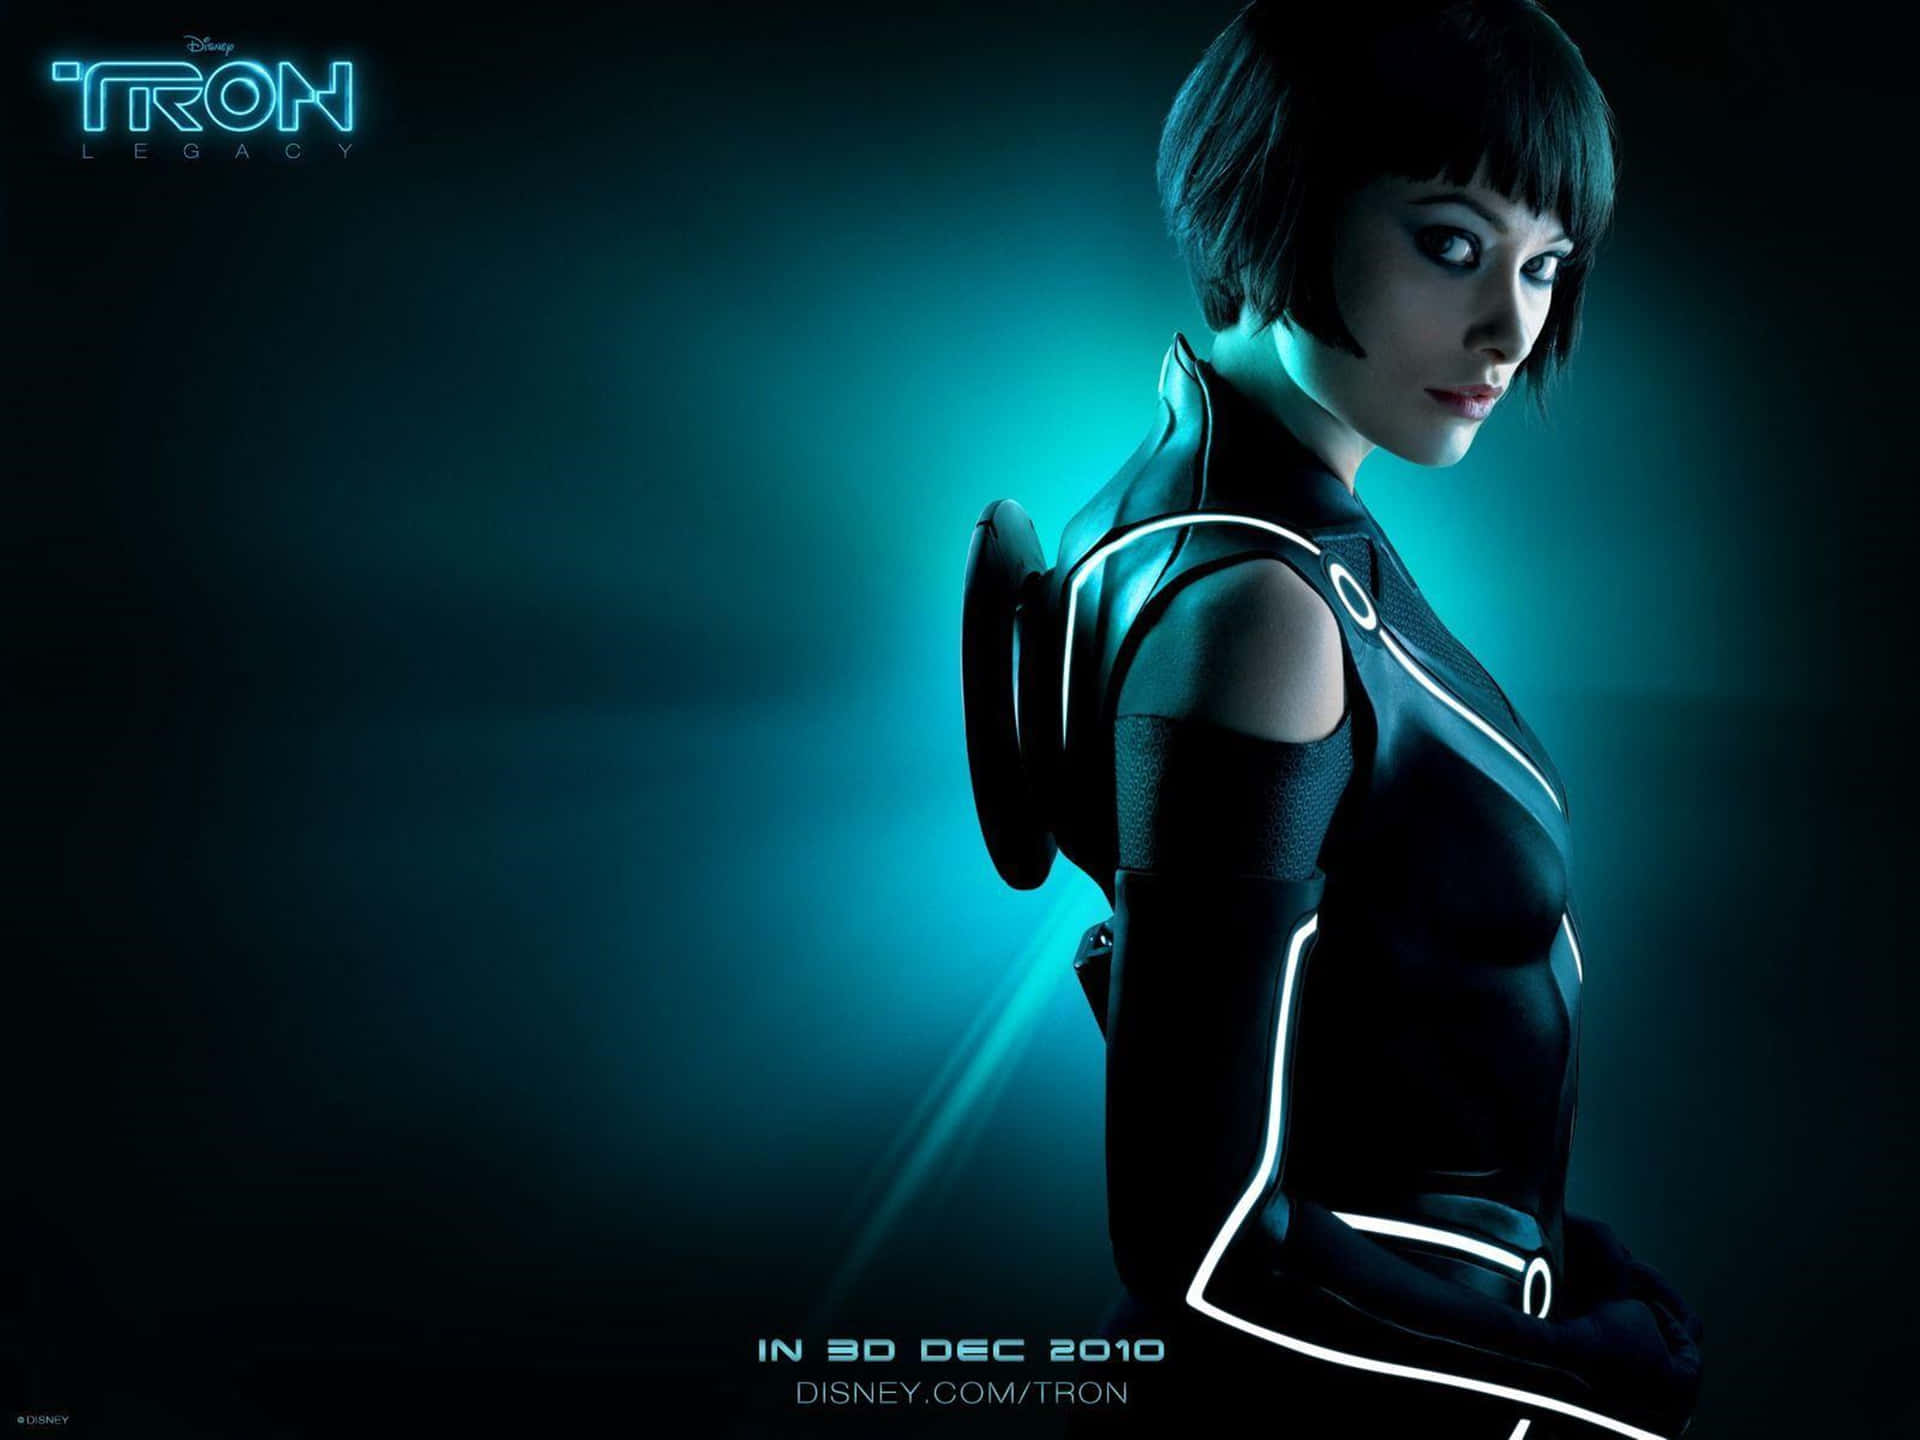 Poster fra Tron-filmen med en kvinde i neonkostume Wallpaper